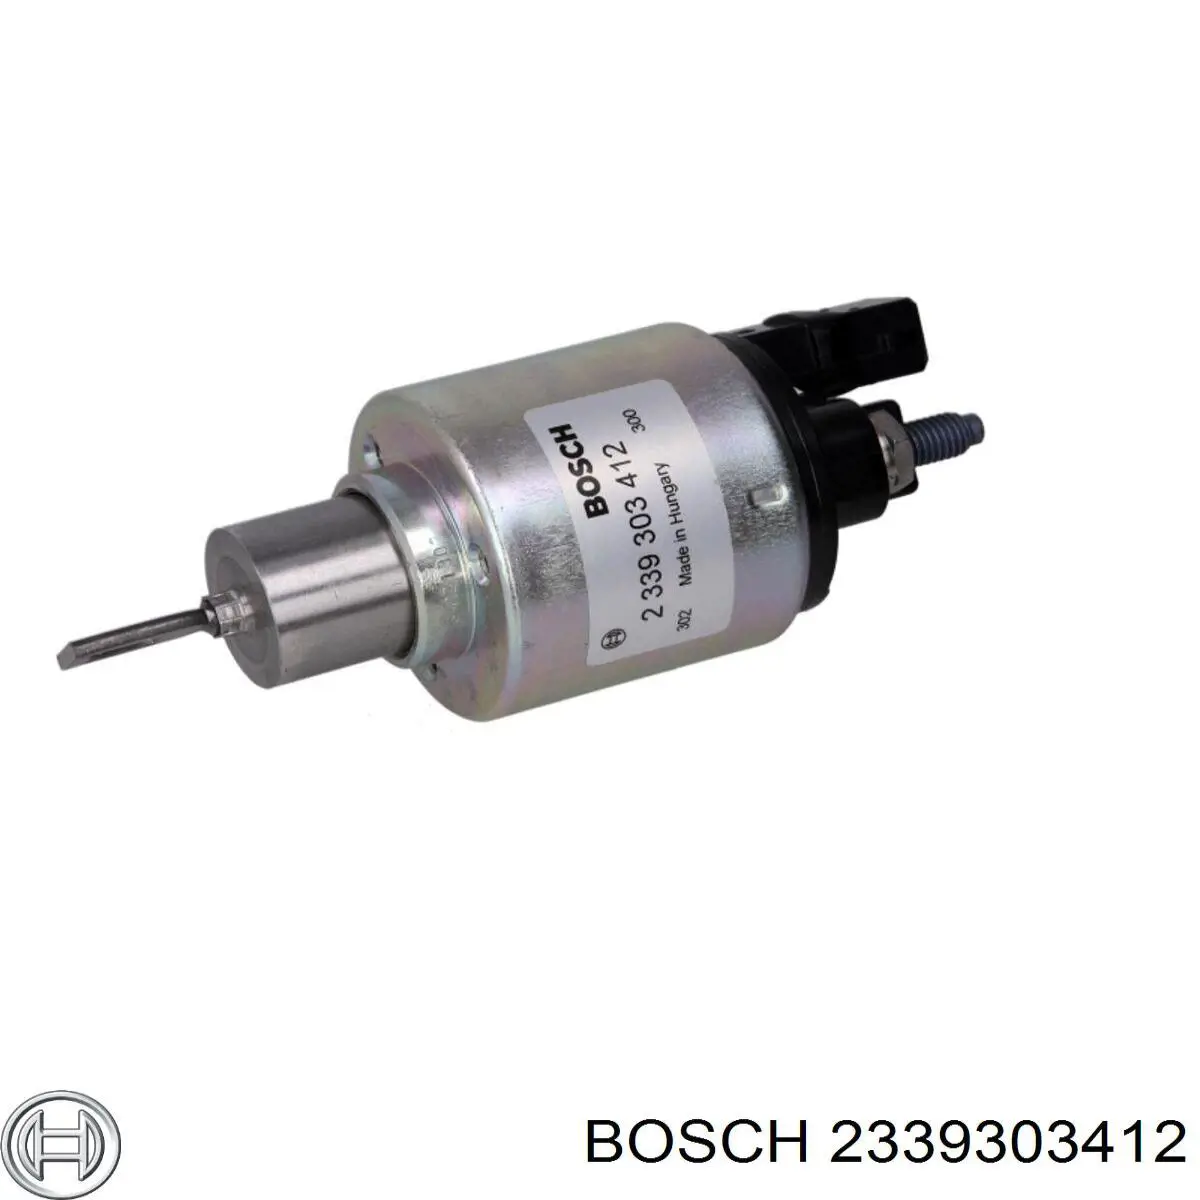 2339303412 Bosch relê retrator do motor de arranco